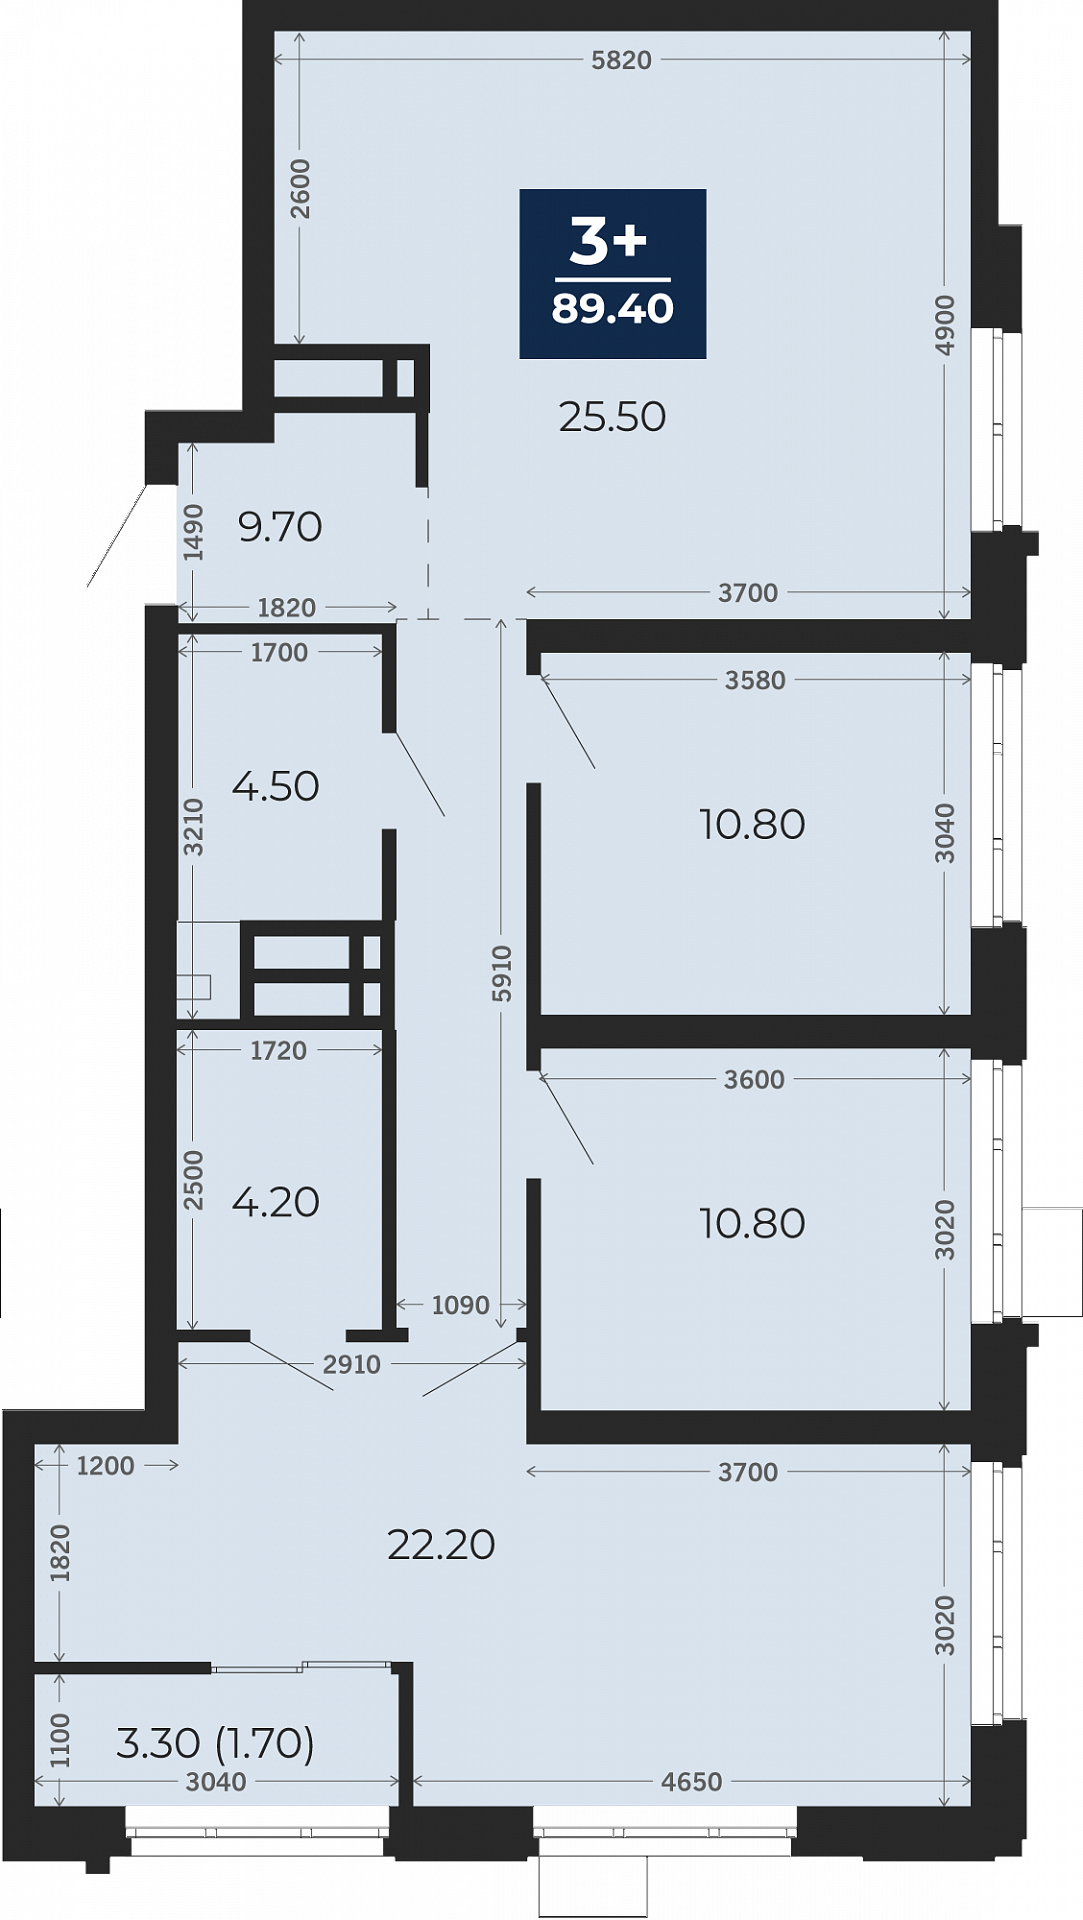 Квартира № 110, 3-комнатная, 89.4 кв. м, 4 этаж